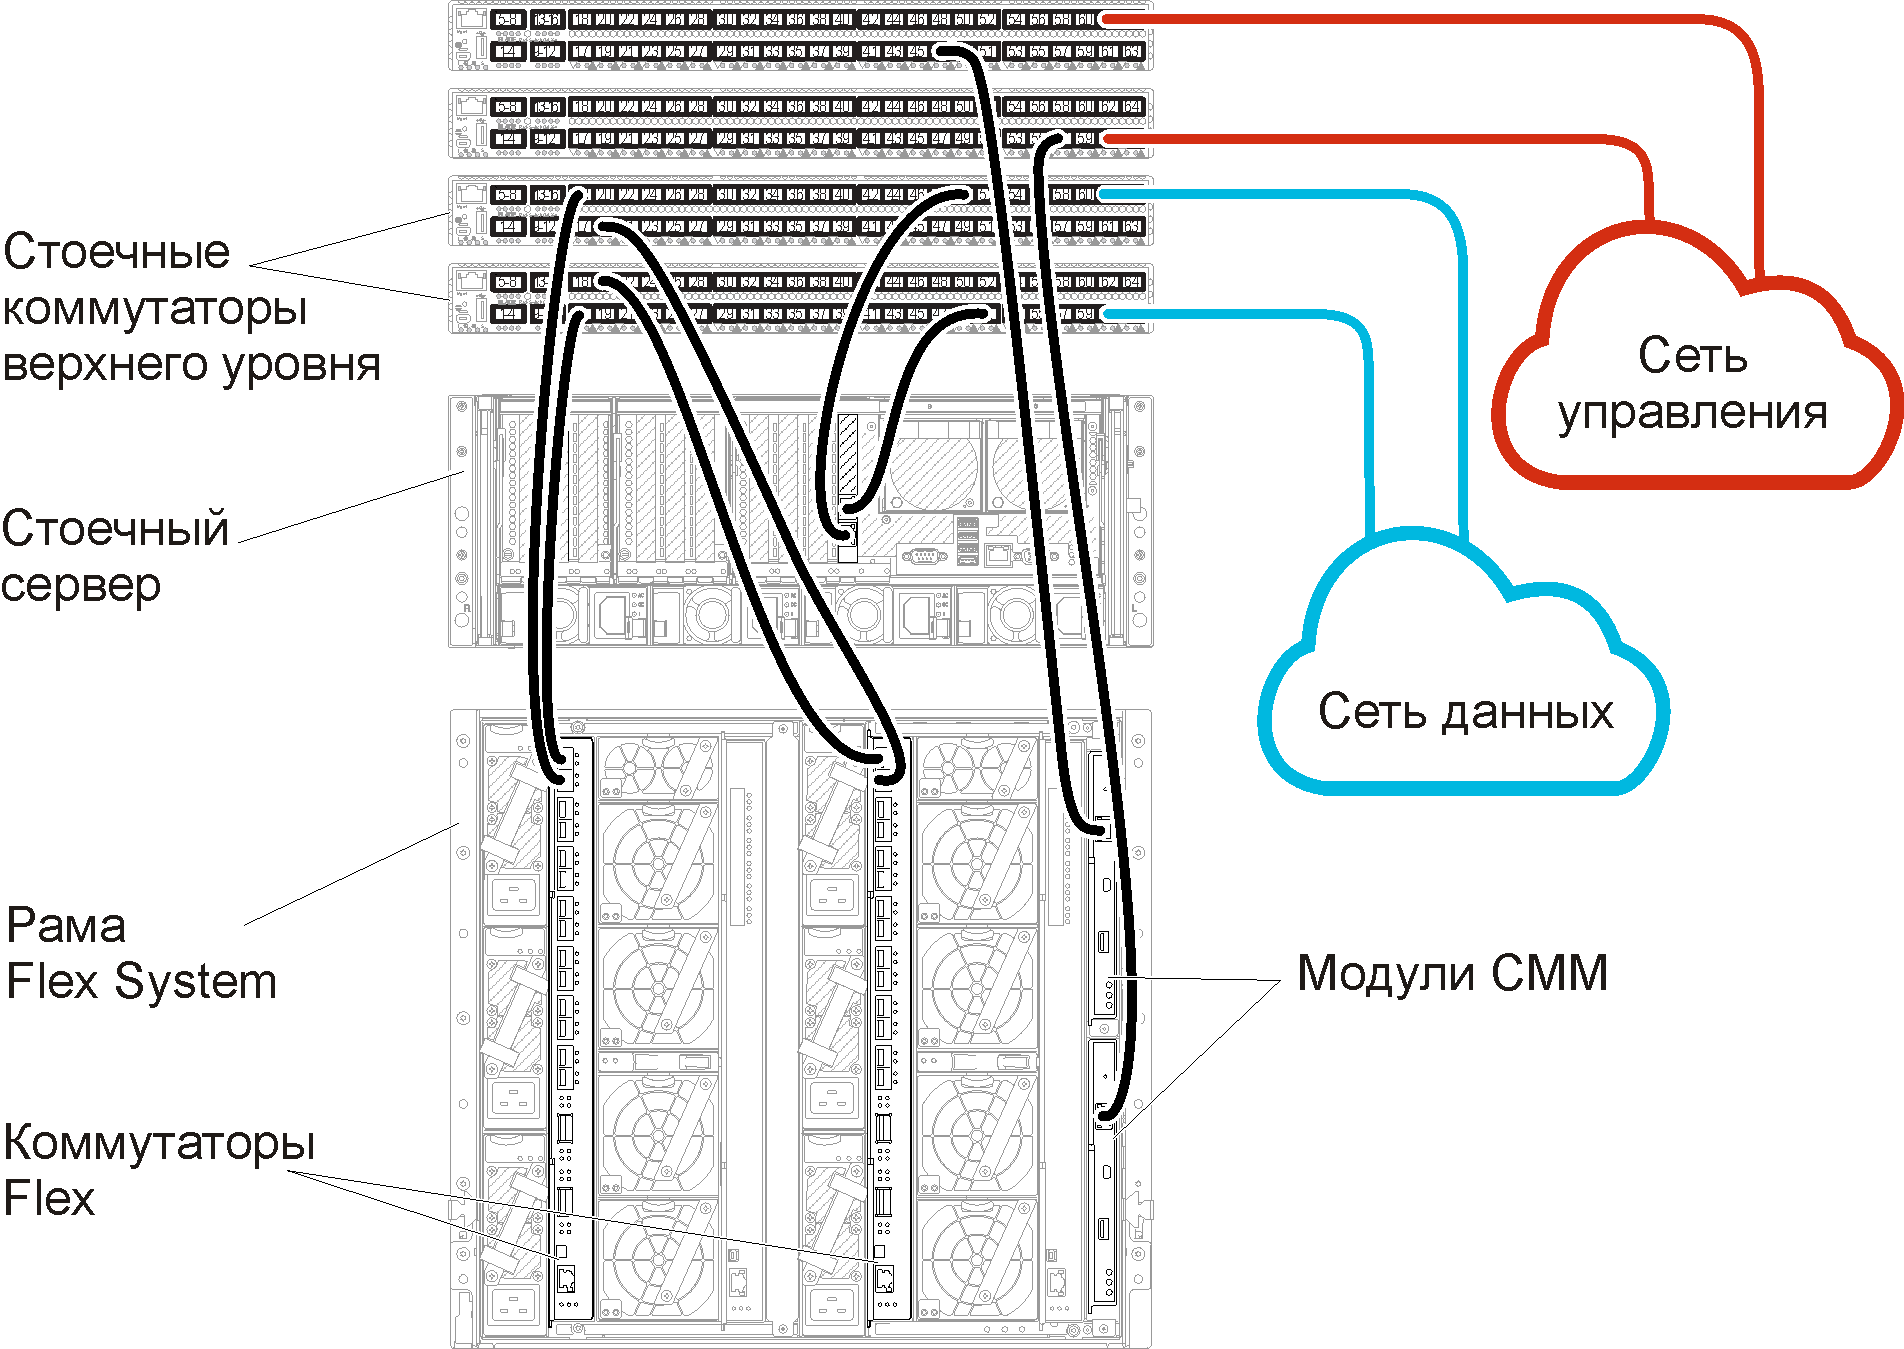 Прокладка кабелей Коммутаторы Flex и CMM для стоечных коммутаторов верхнего уровня для физически разделенных сетей данных и управления.